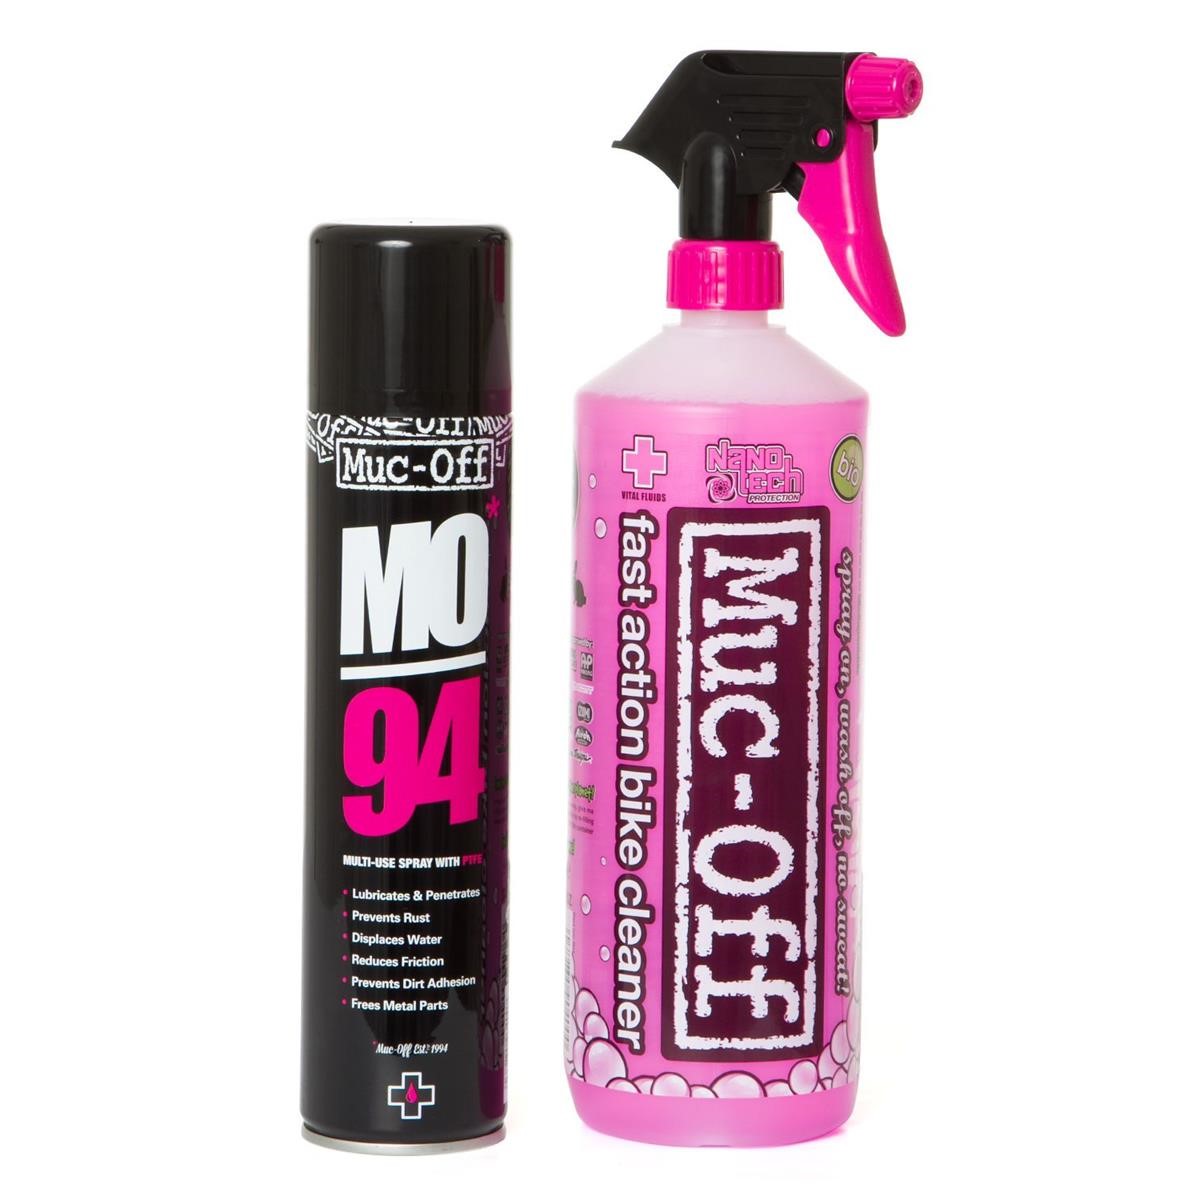 Muc-Off Bike Cleaner Nano Tech Cleaner/MO94 Spray Set 2 in 1